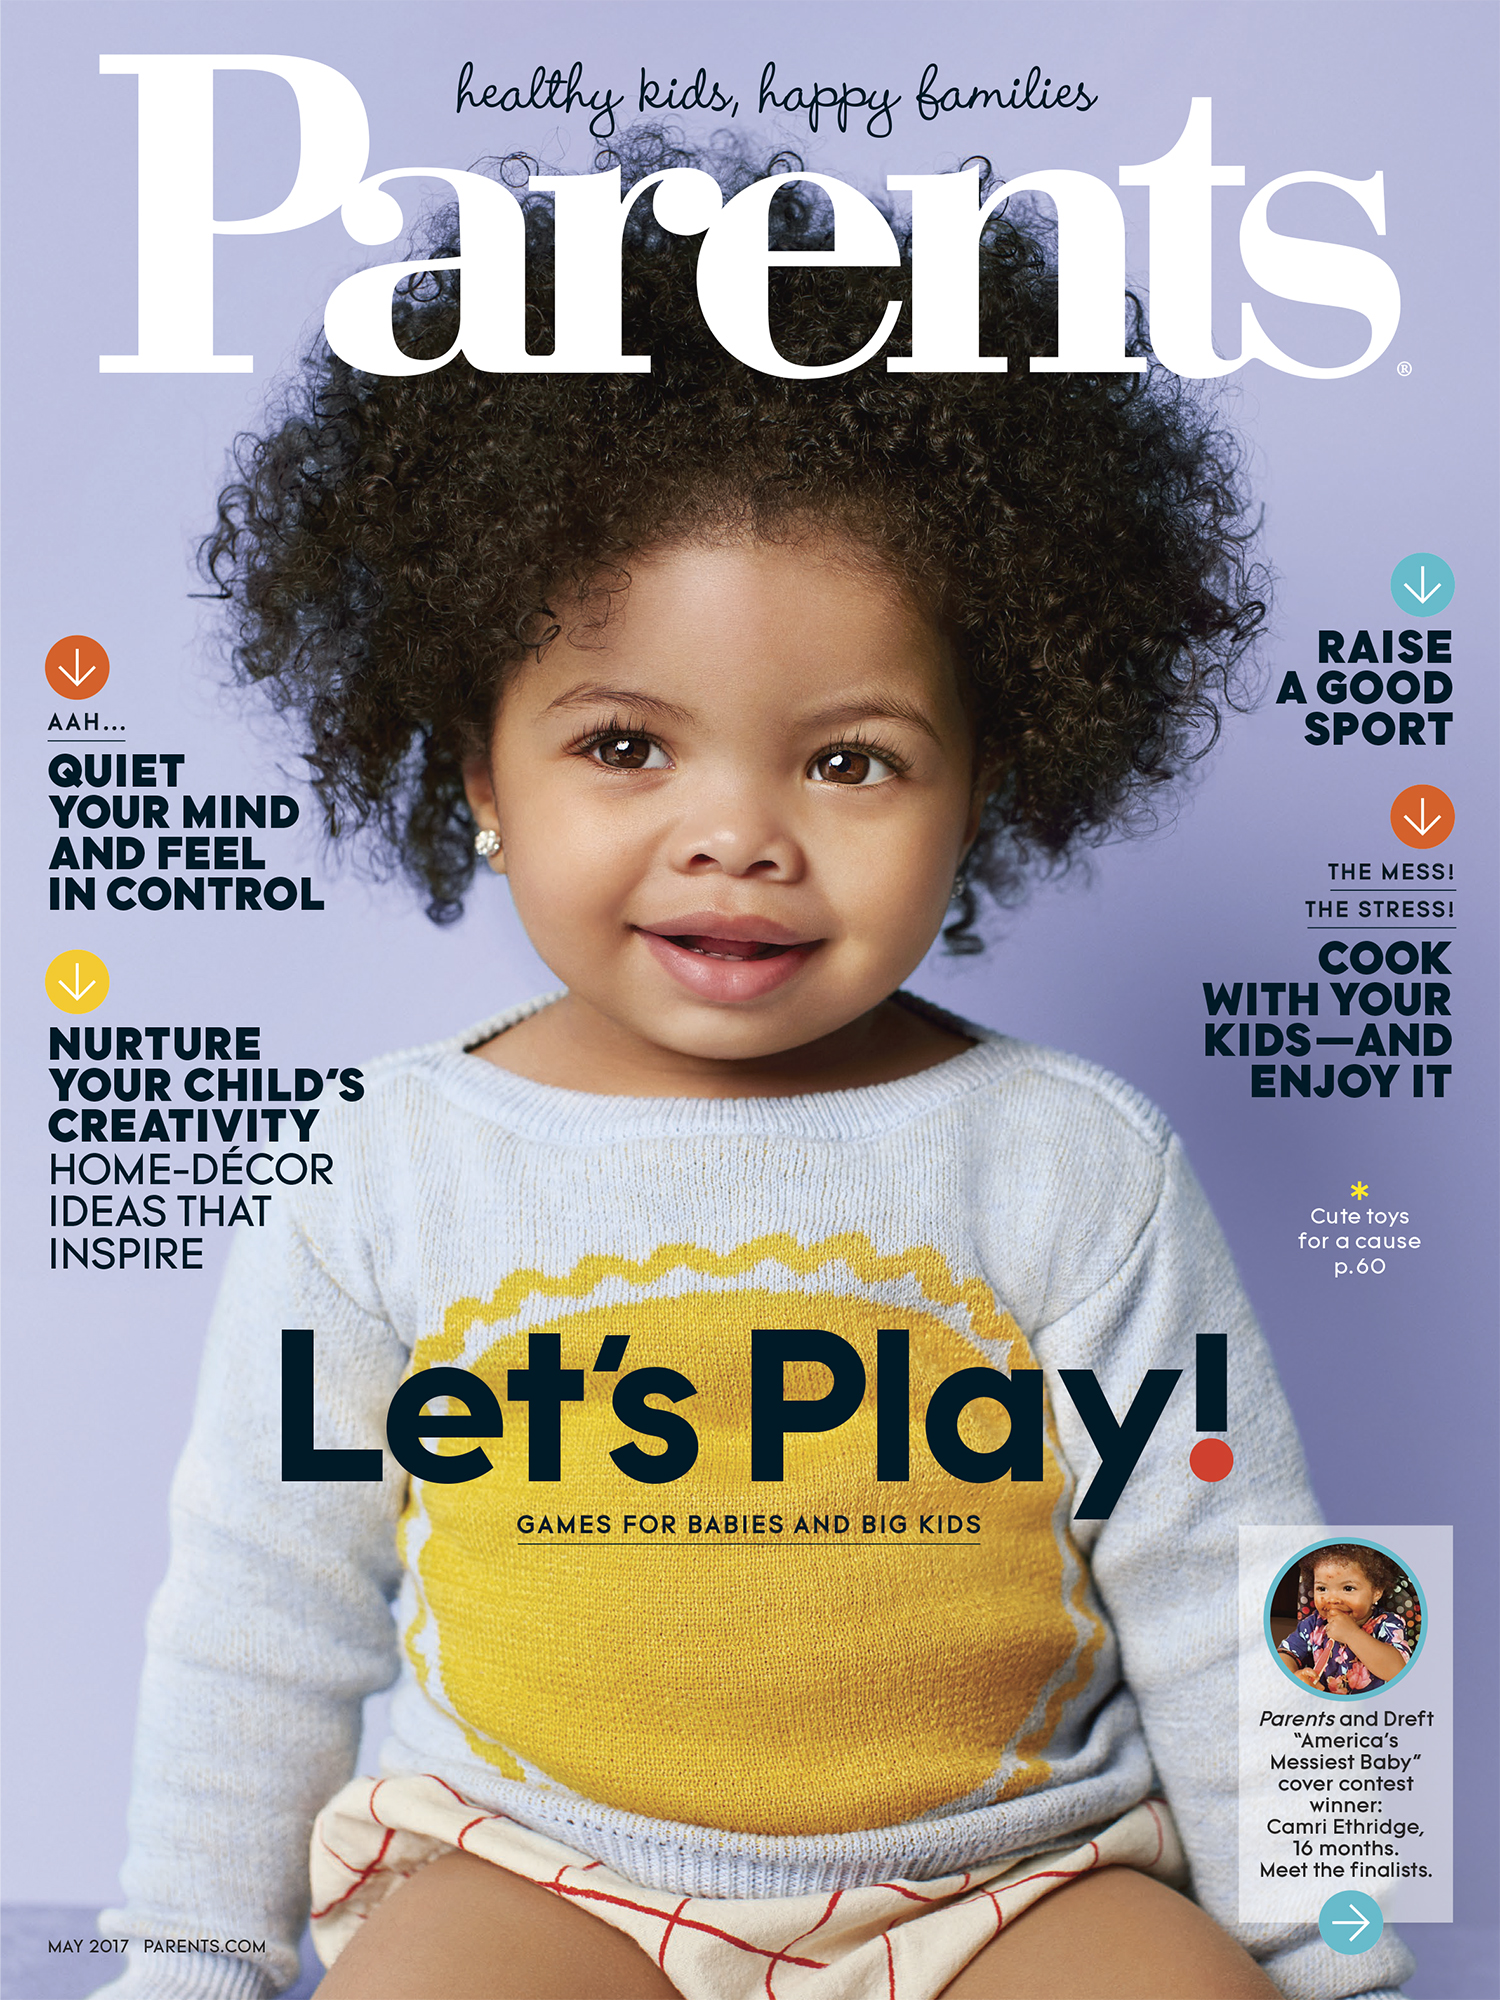 The Daily Edit - Parents Magazine: Priscilla Gragg - A Photo EditorA